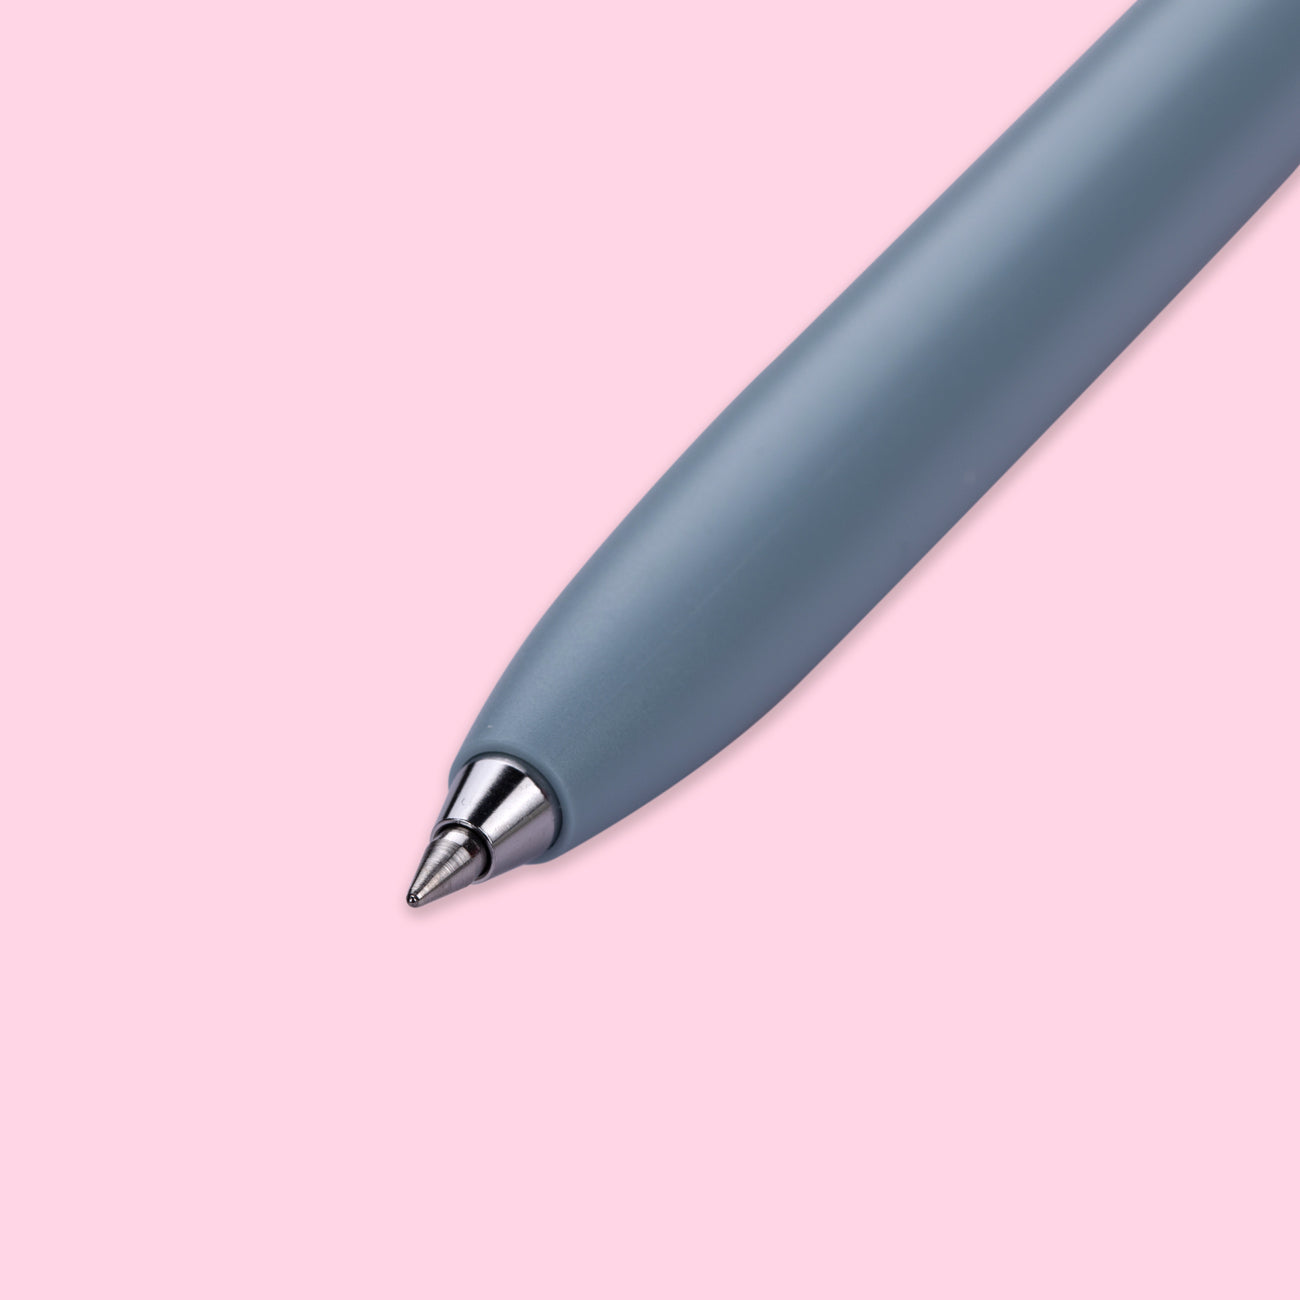 Uni-ball One F. 0.5mm Gel Pen Ink Refill